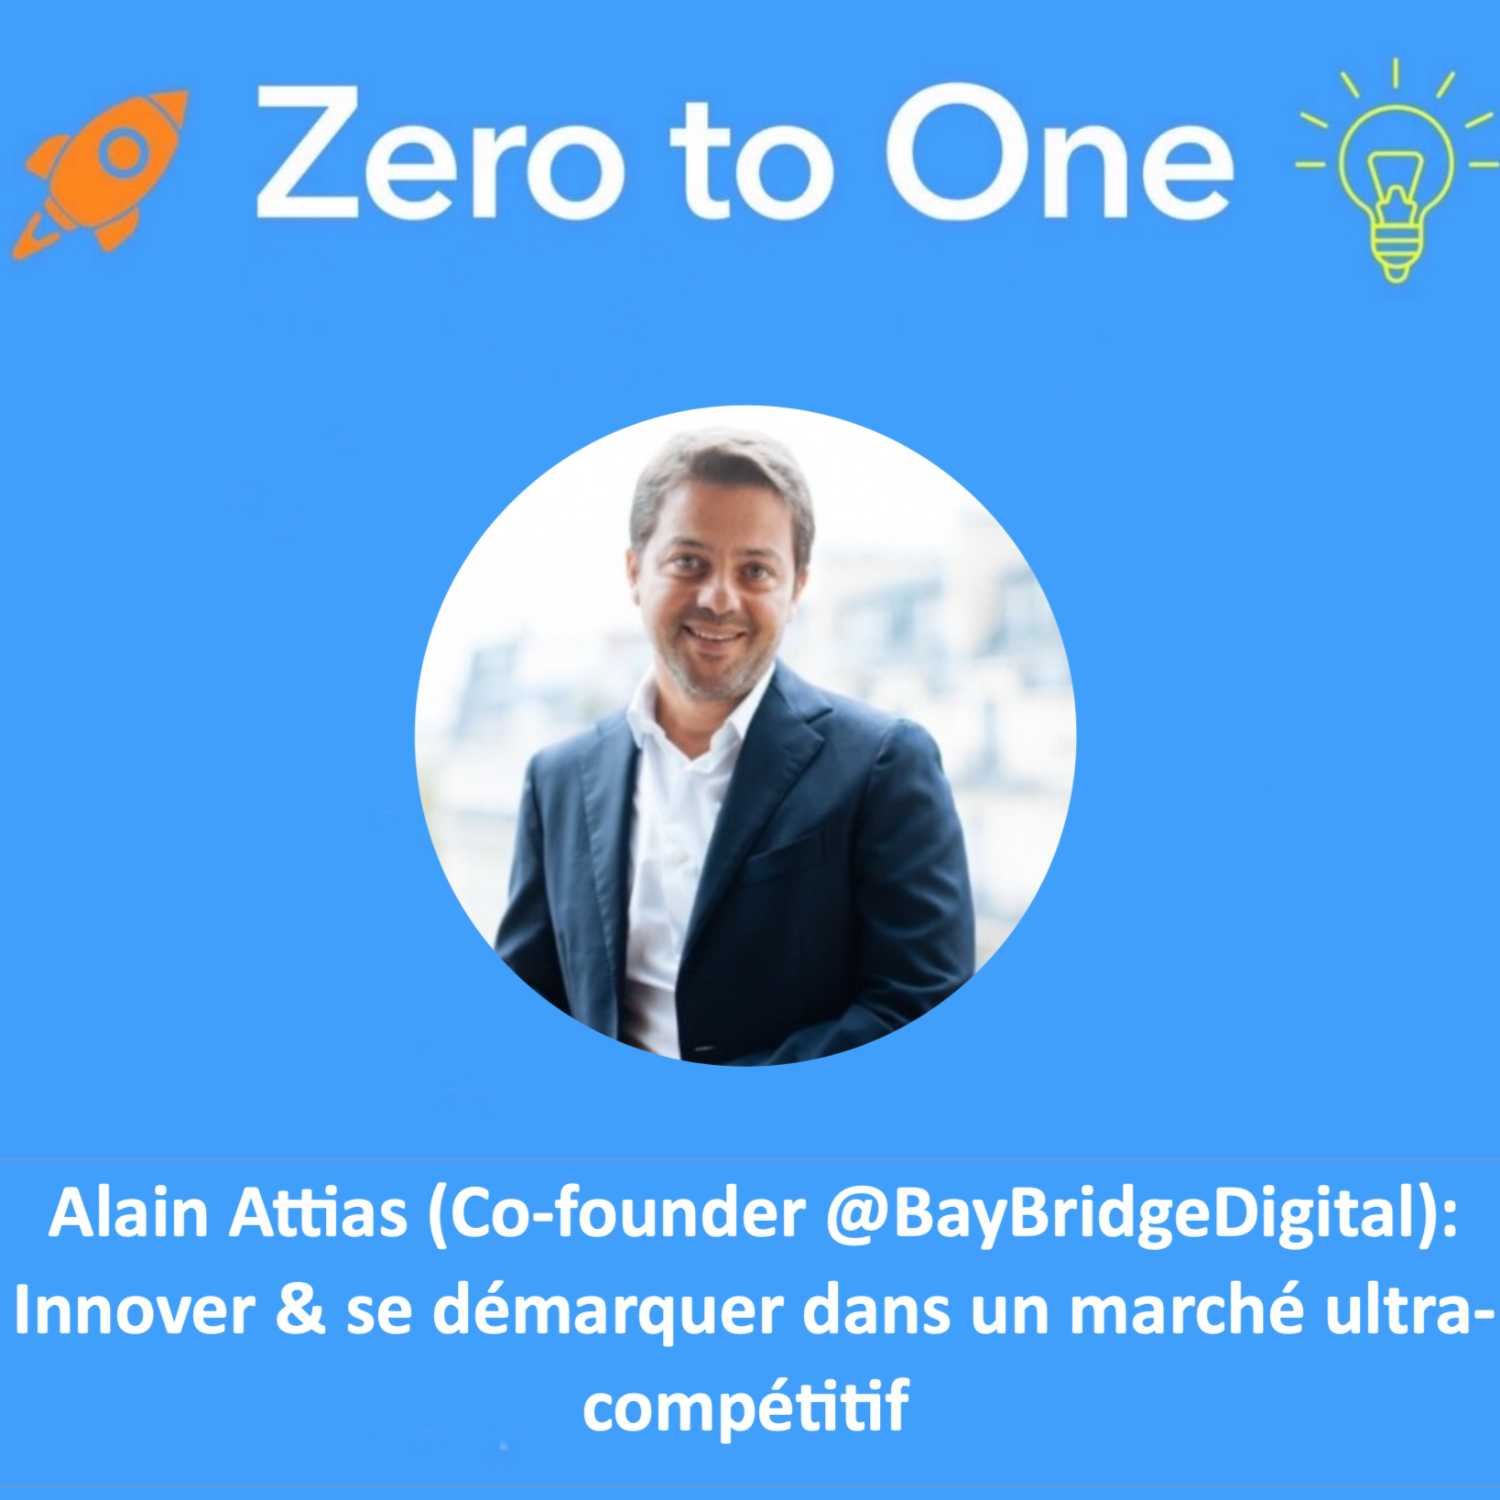 Alain Attias: Innover & se démarquer dans un marché ultra-compétitif 🧠